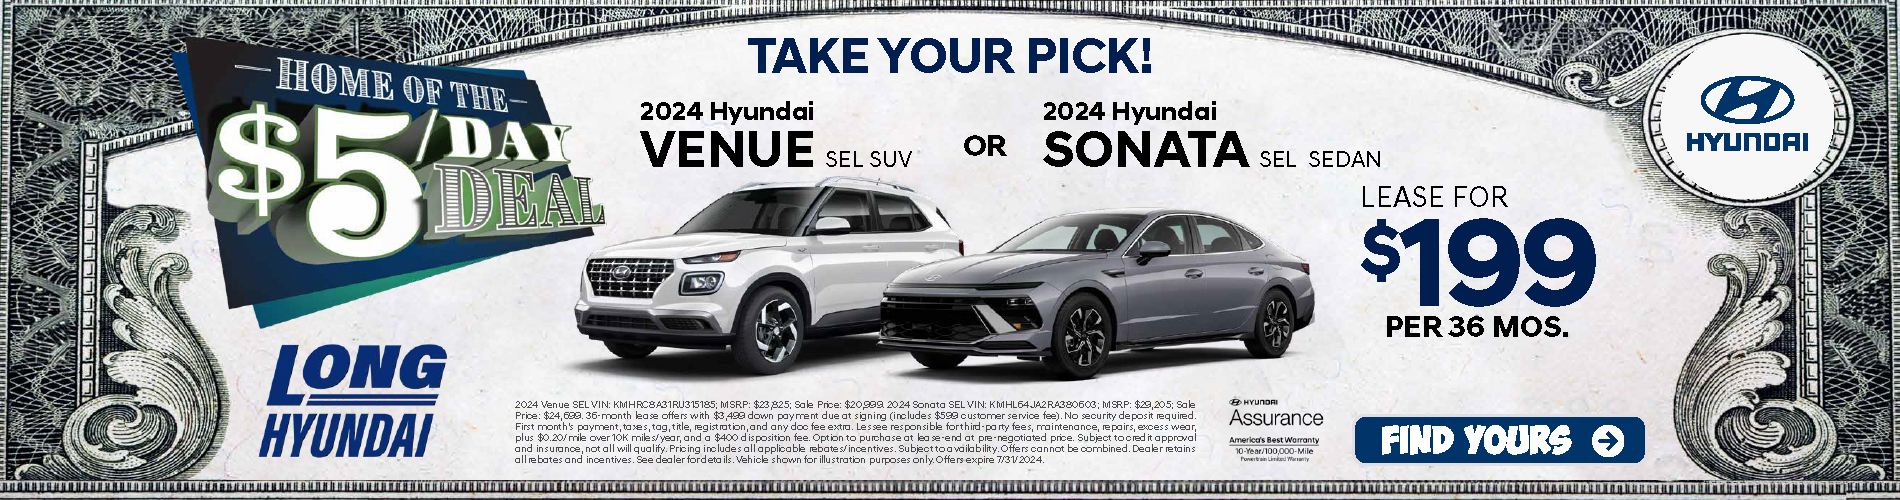 2024 Take your pick! Venue or Sonata